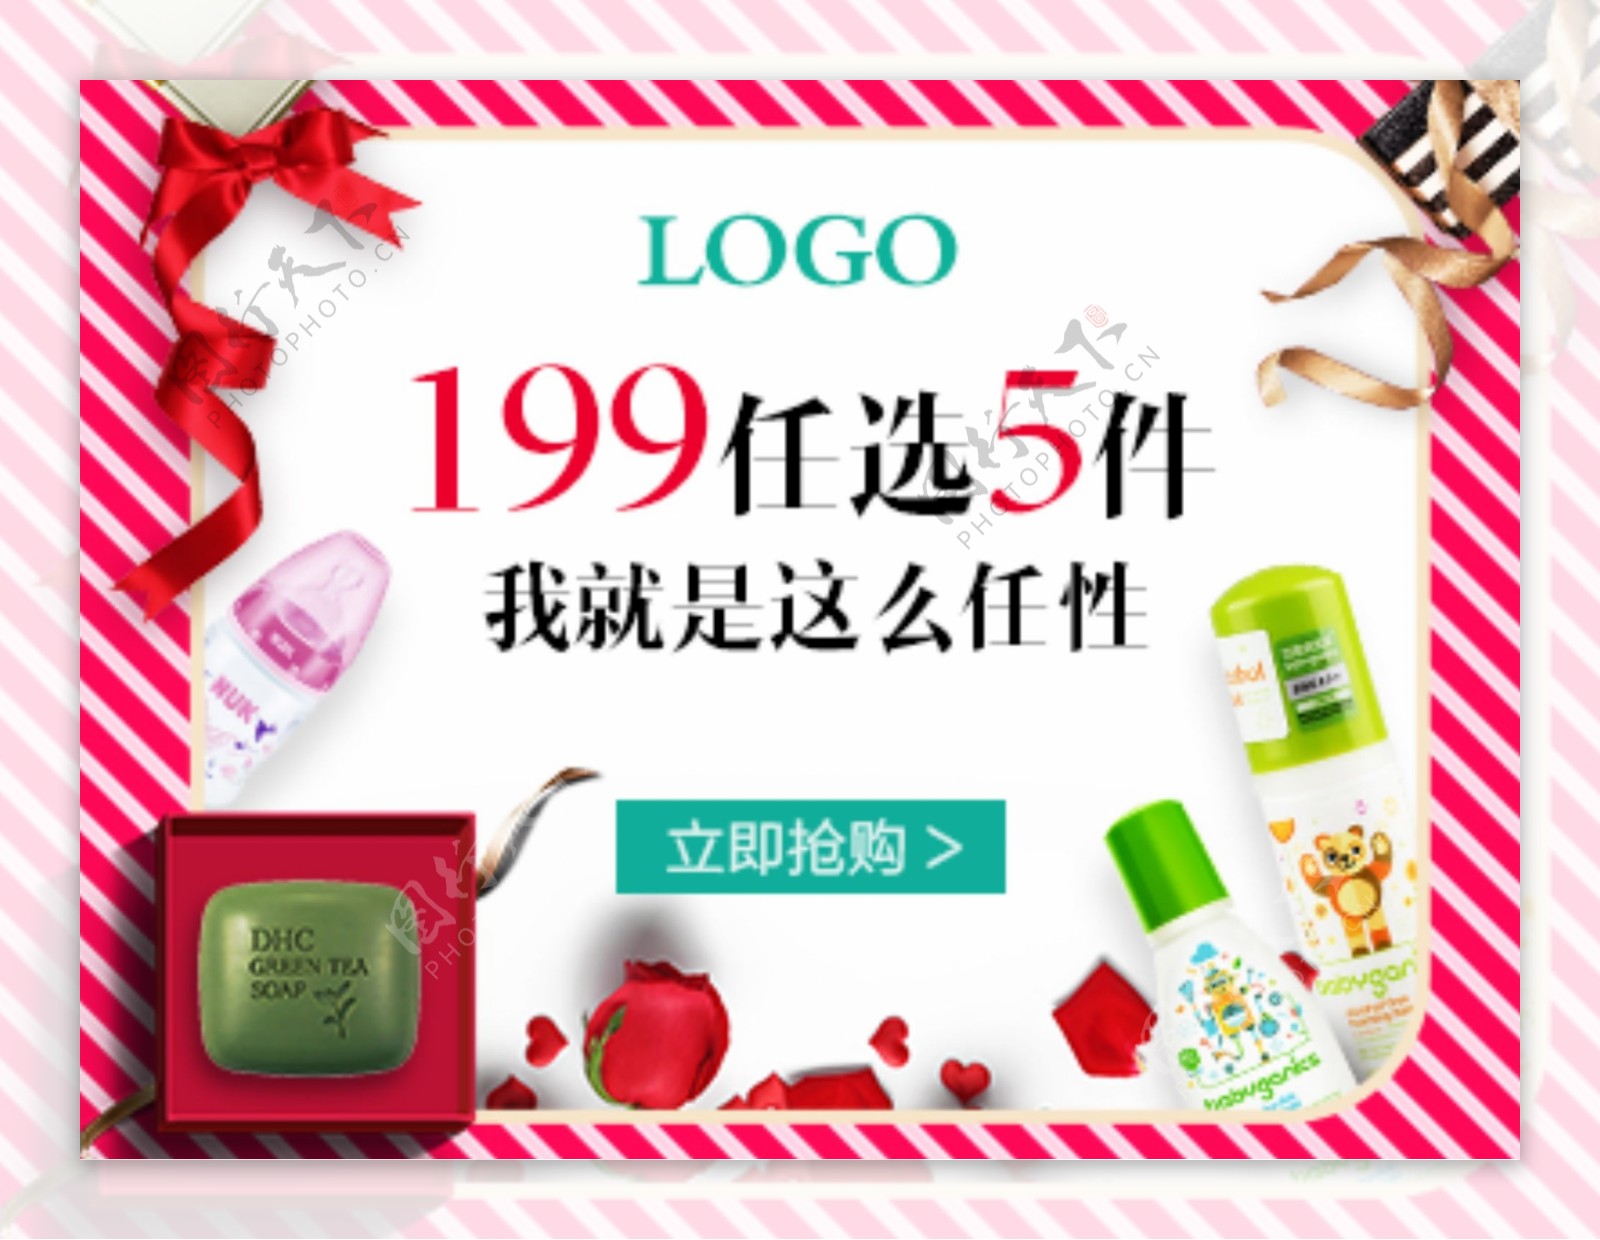 电商淘宝产品促销海报广告活动化妆品素材